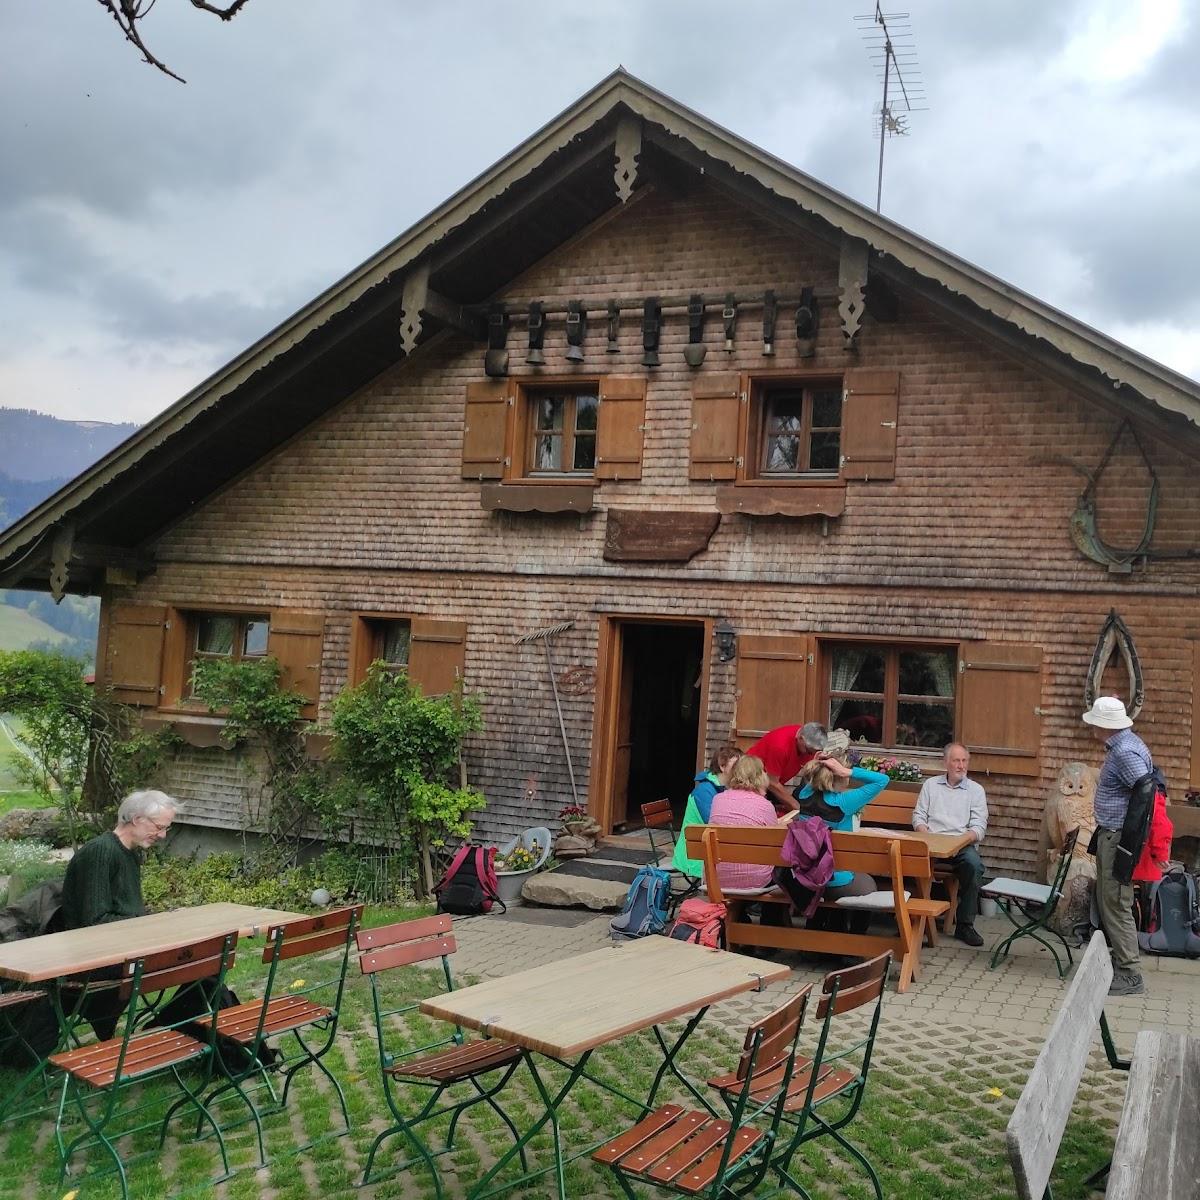 Restaurant "Alpe Schneidberg" in Oberstaufen